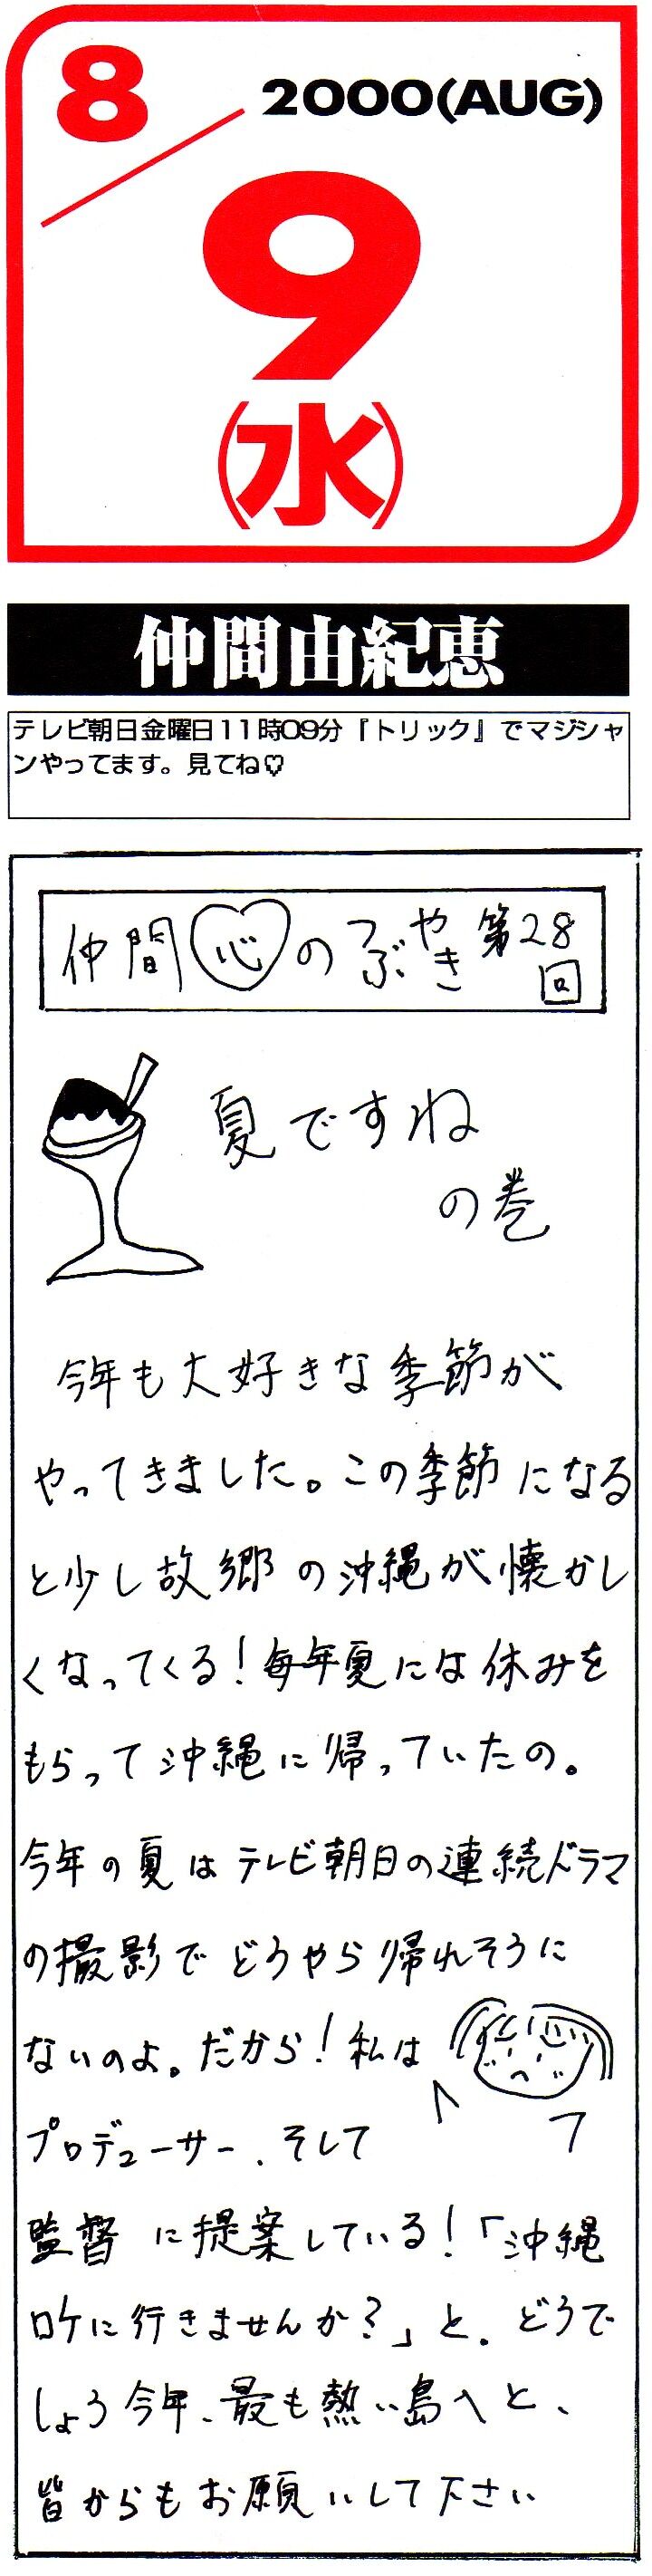 画像 女優 仲間由紀恵が書く文字 全然イメージにない可愛らしい文字で草 クサ速